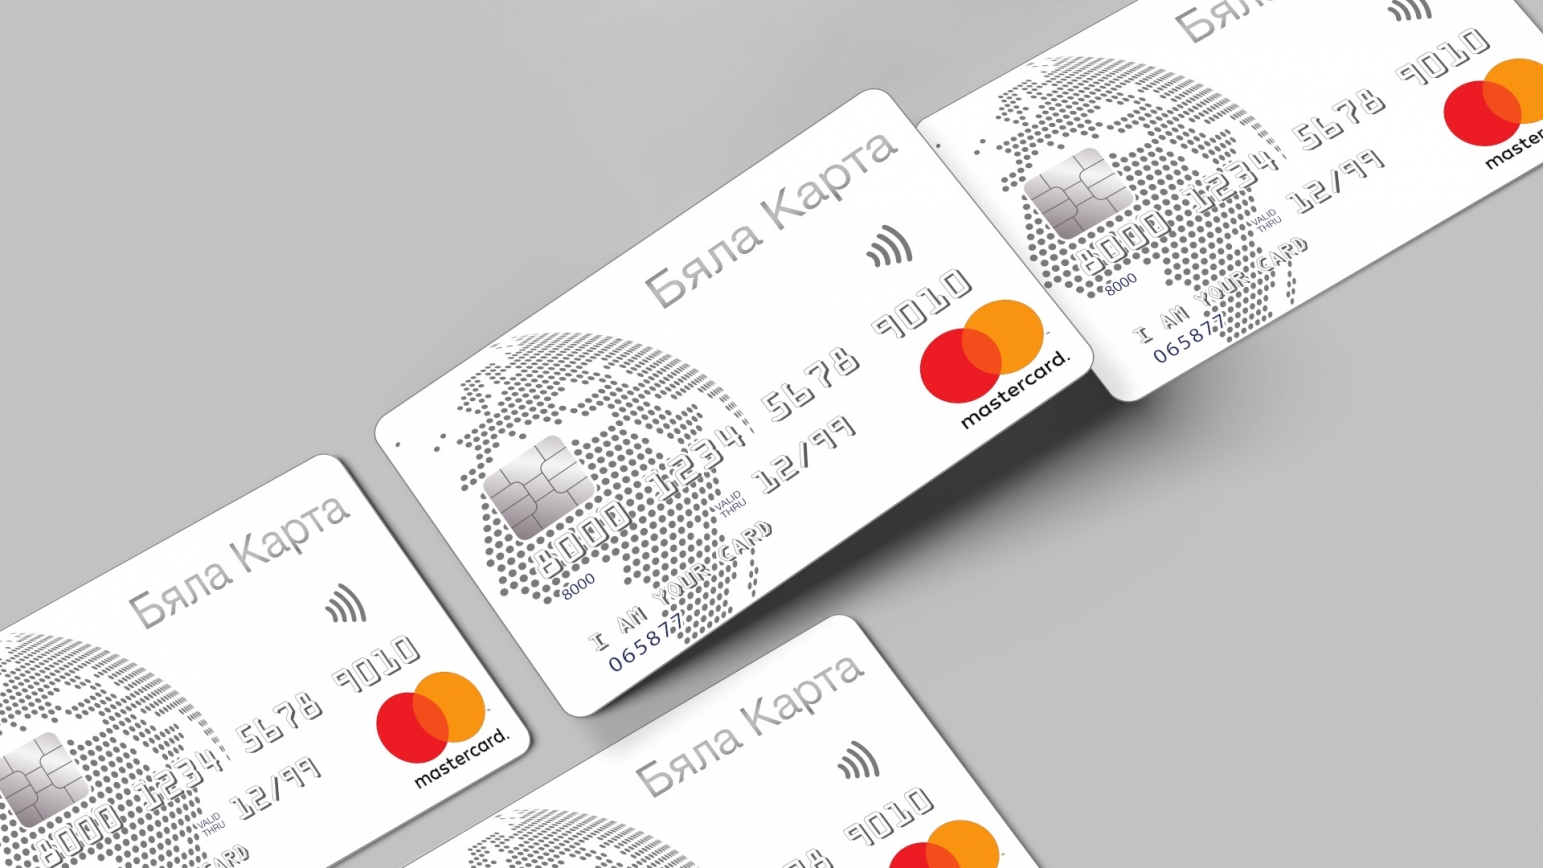 Как да избереш кредитна карта според нуждите си? Виж 4 основни правила